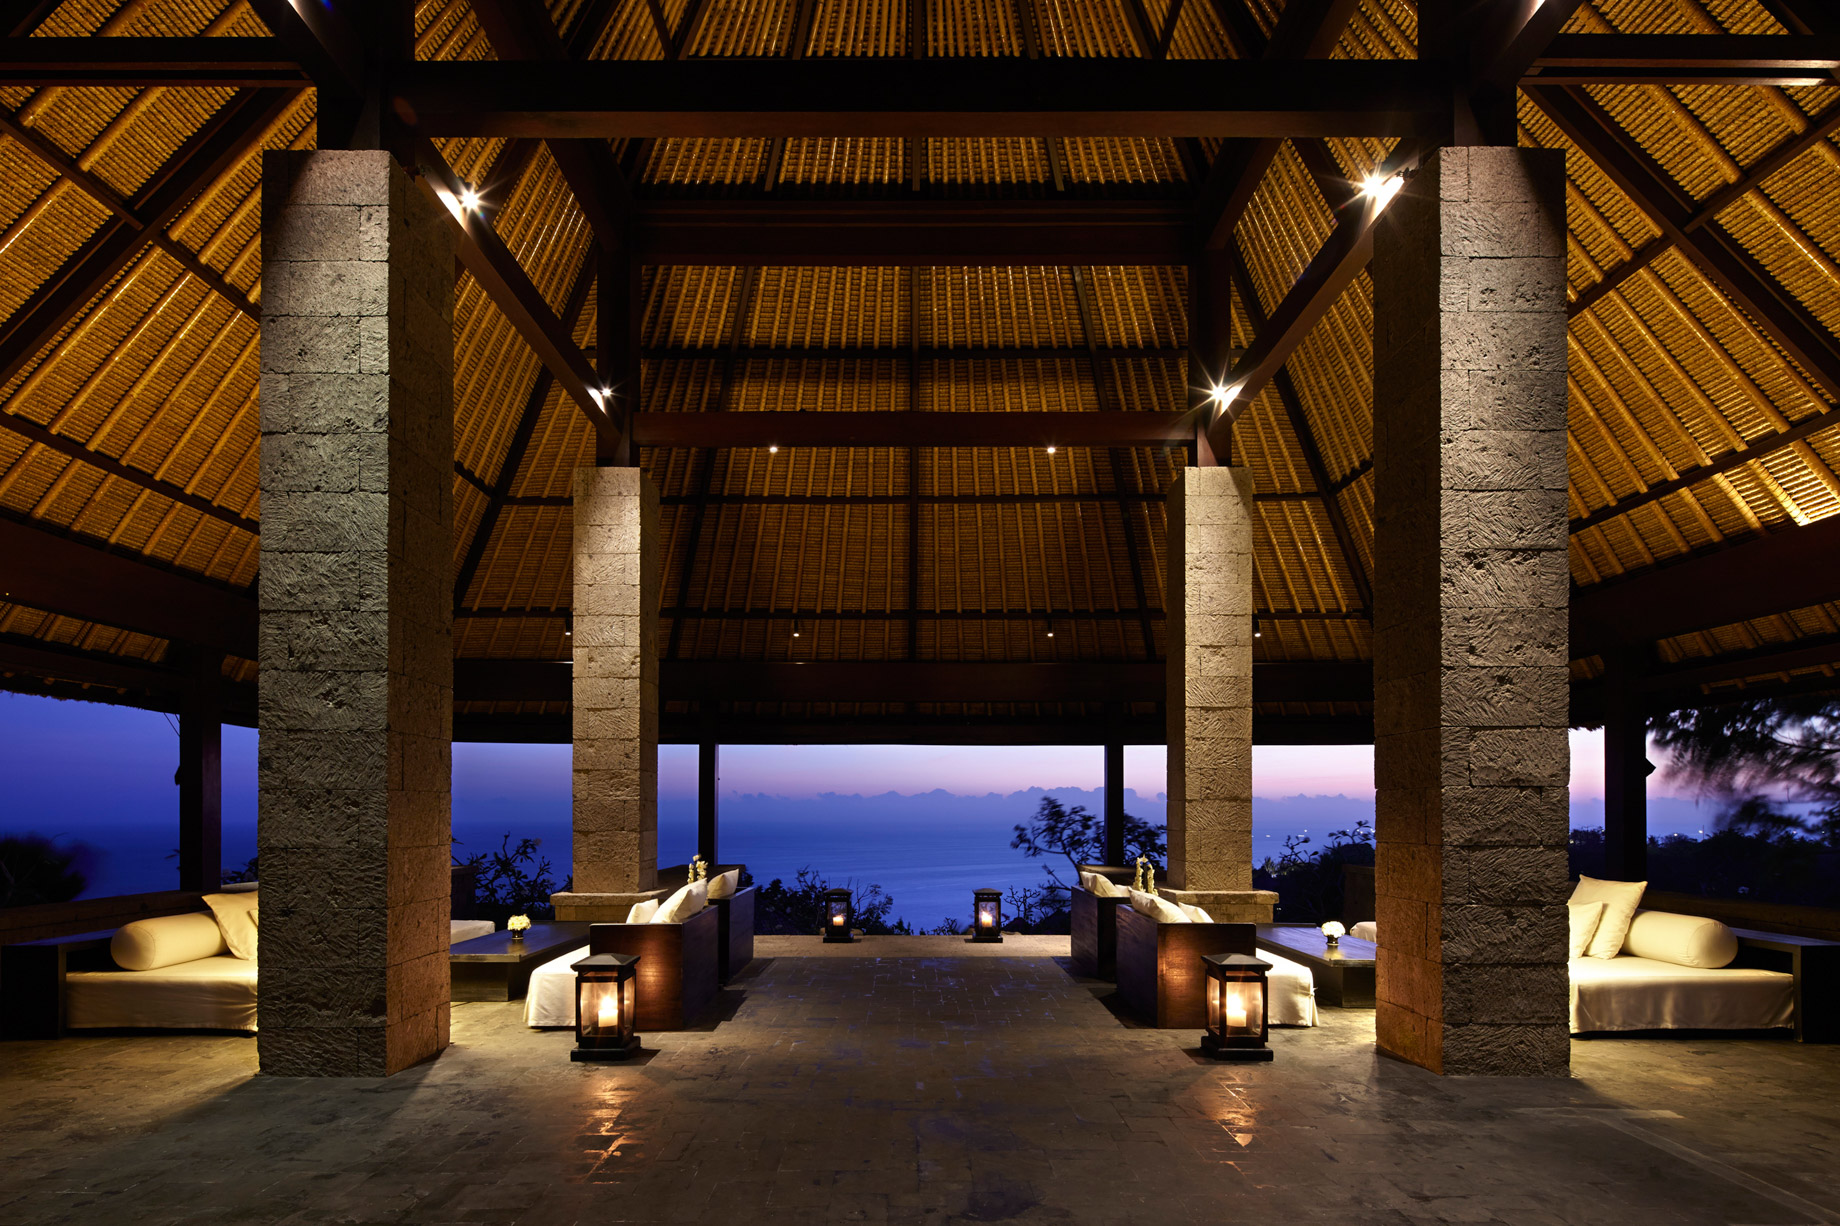 Bvlgari Resort Bali – Uluwatu, Bali, Indonesia – Resort Ocean View Arrival Pavilion Sunset